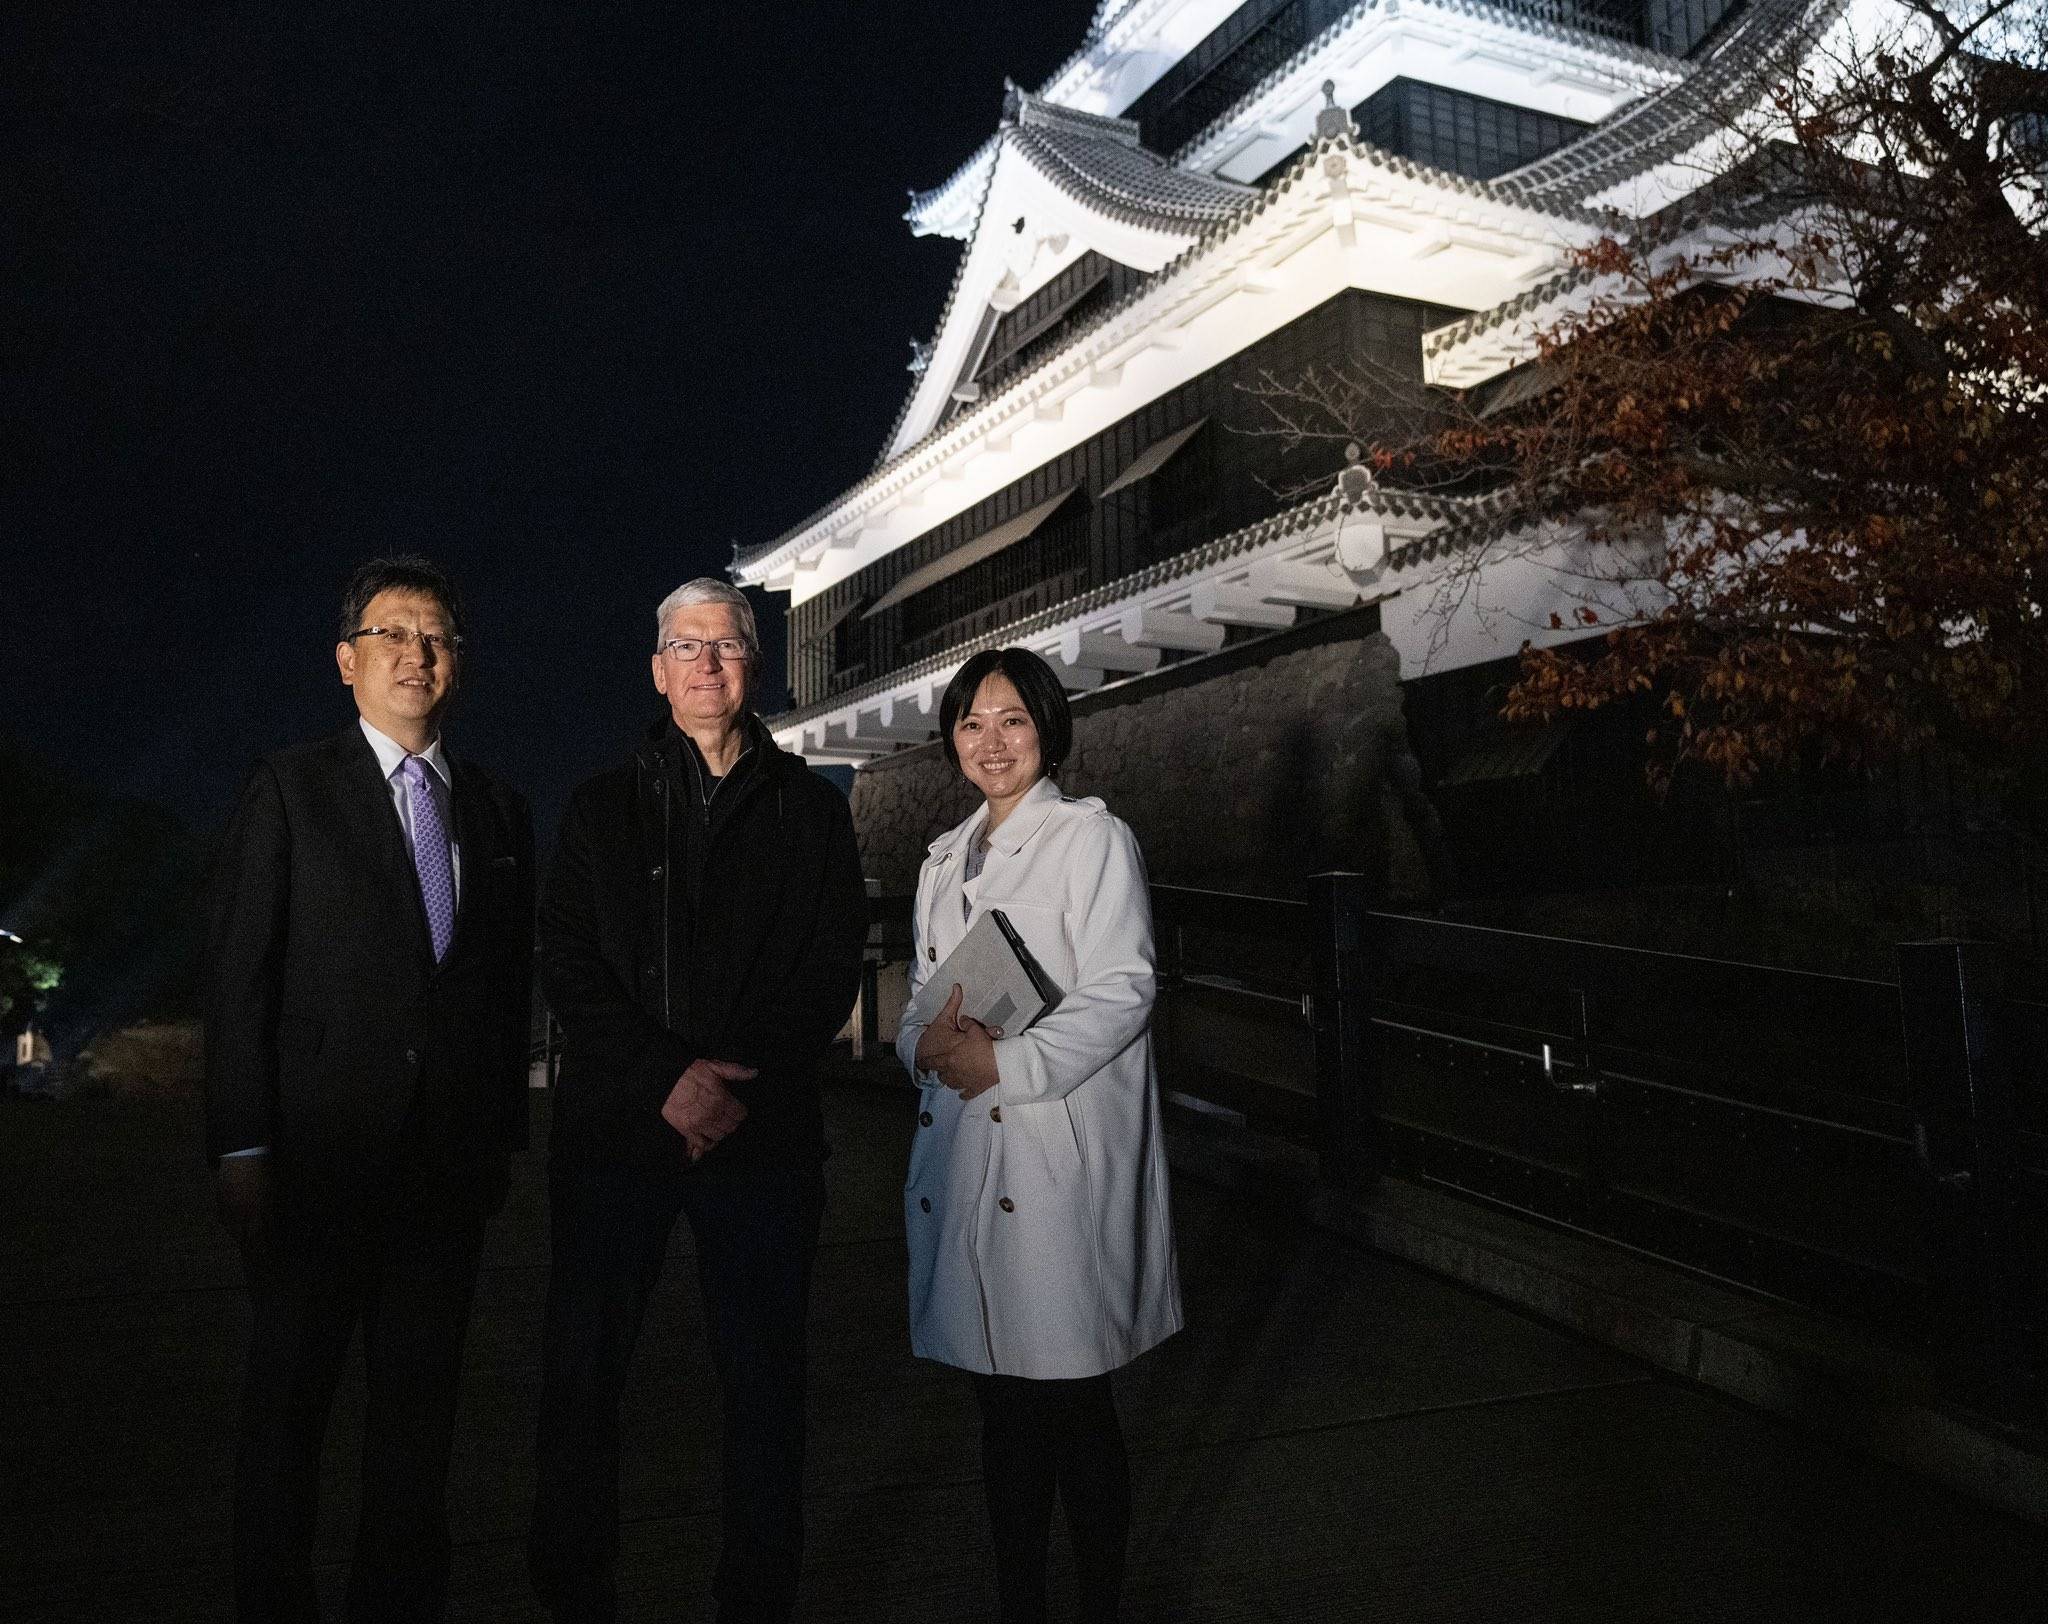 庫克與熊本市長大西一史和一位導覽人員合影照片。